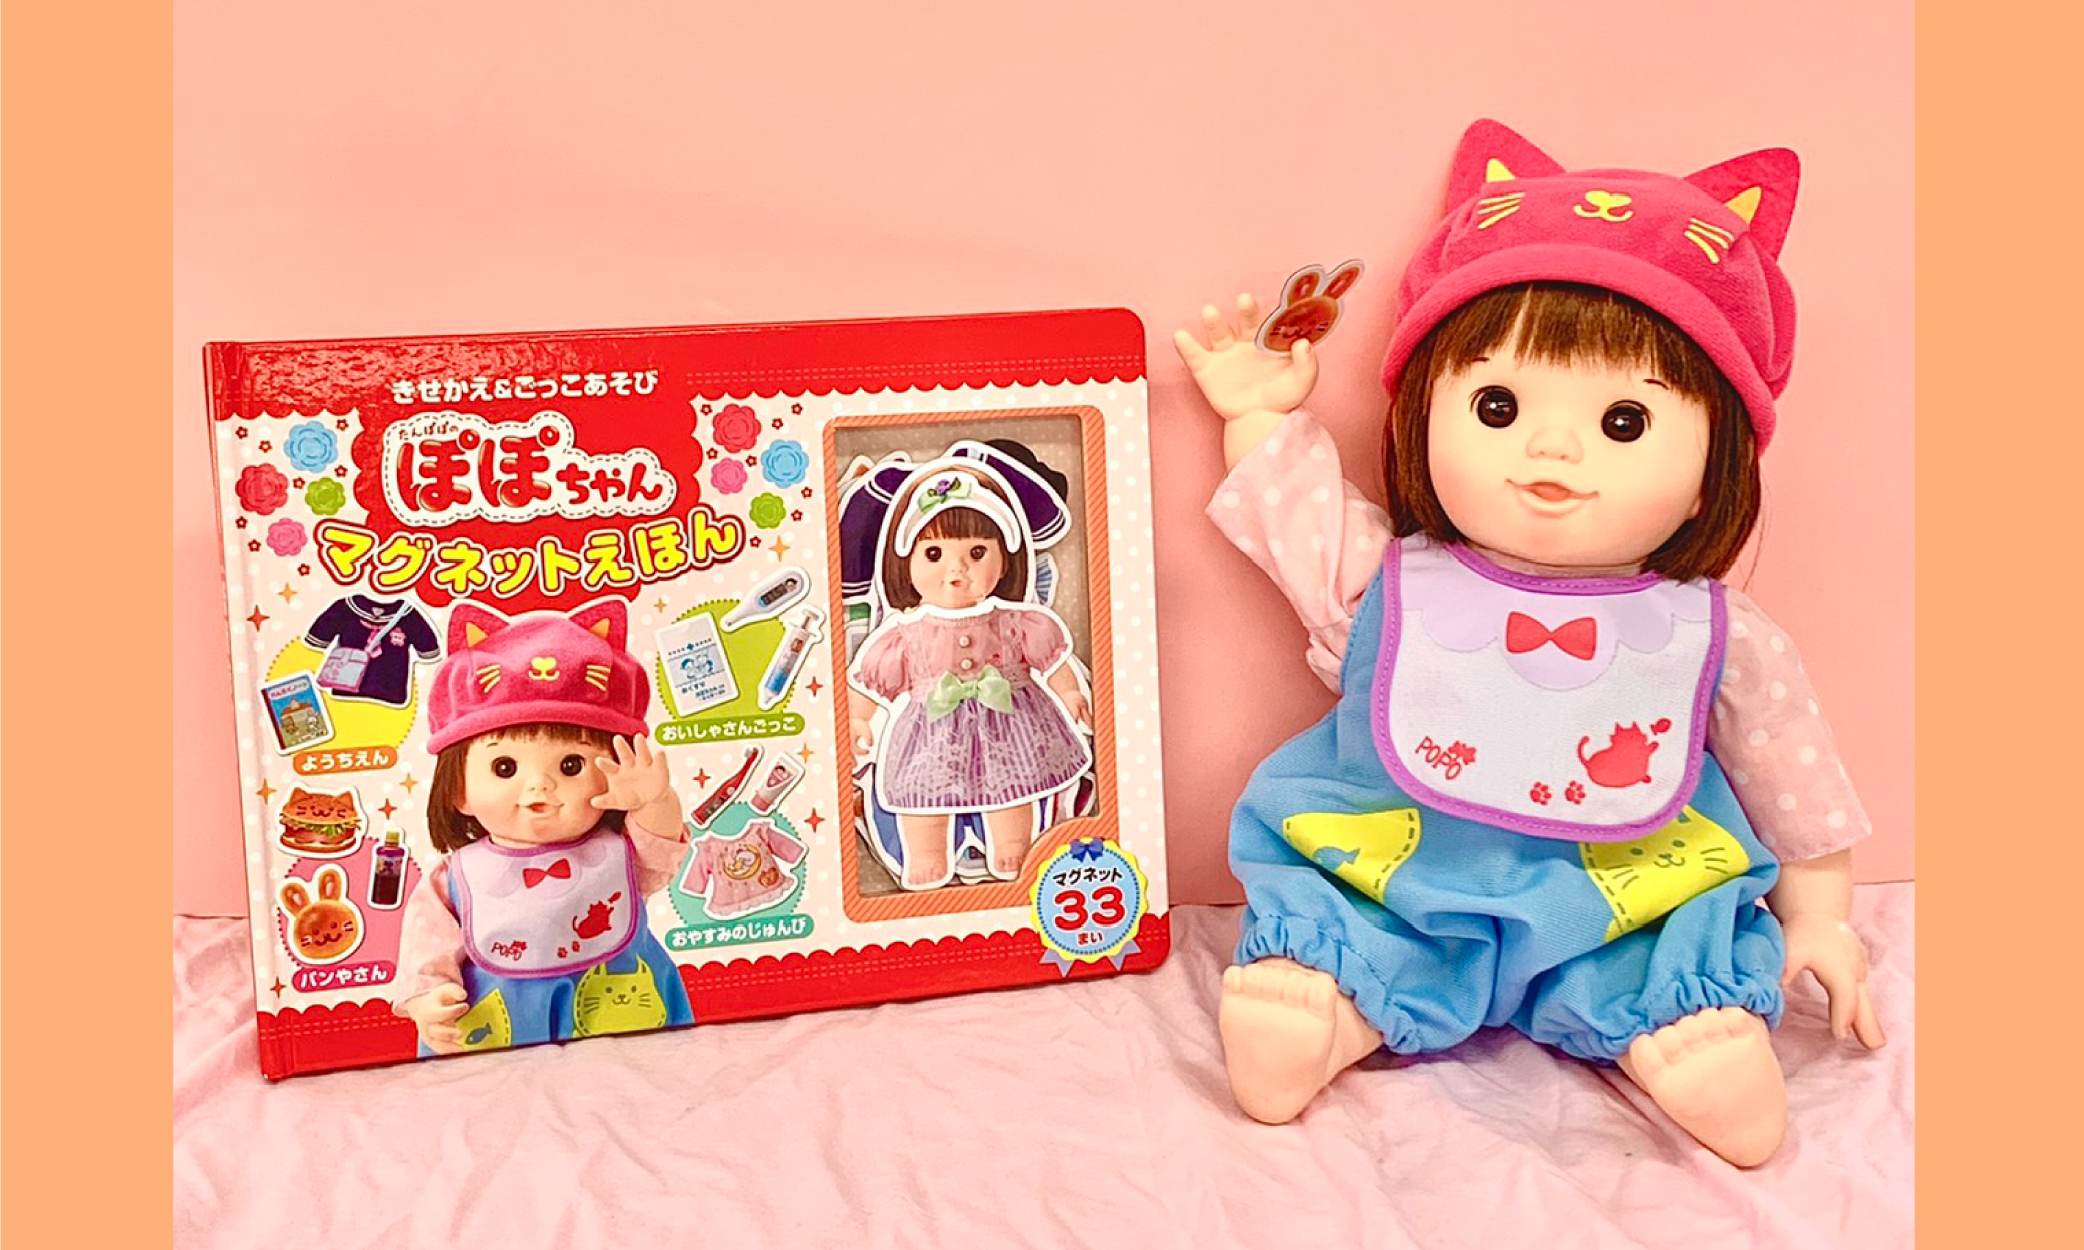 ぽぽちゃん」公式ホームページ | POPO-CHAN.COM – ぽぽちゃん は“幼い母性”を育む「知育人形」です。ふわふわボディでお世話にぴったり。新商品情報など随時更新中！